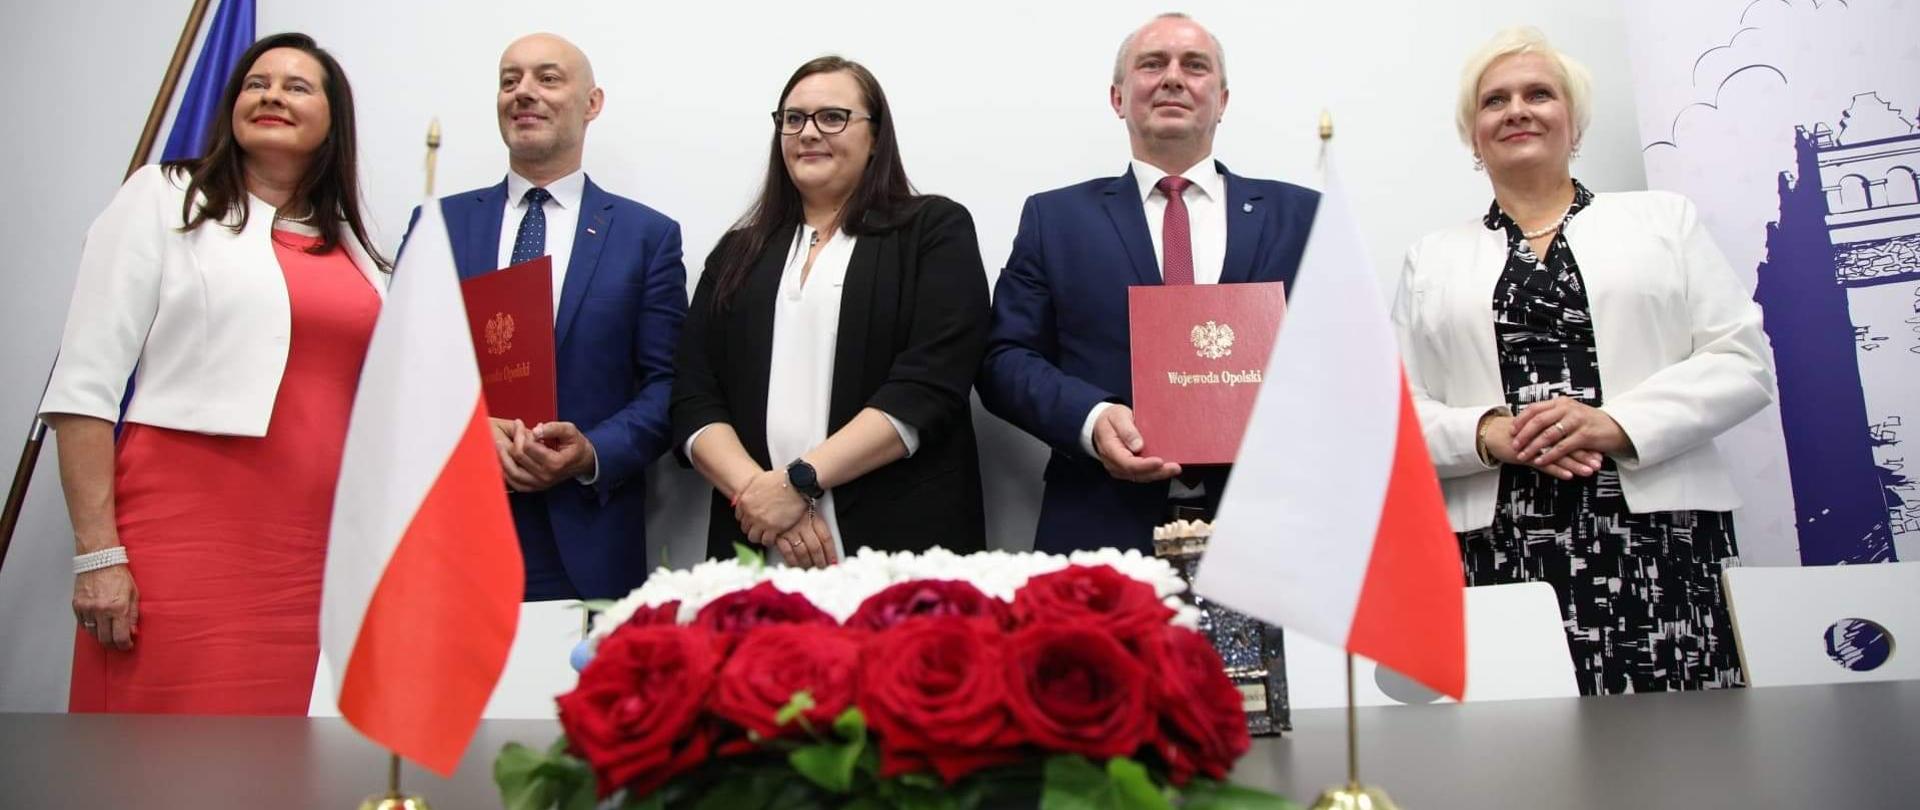 Na pierwszym planie stół, na którym po środku stoi wiązanka kwiatów a obok flagi Polski. Dalej stoi pięć osób. Pośrodku minister M. Jarosińska-Jedynak